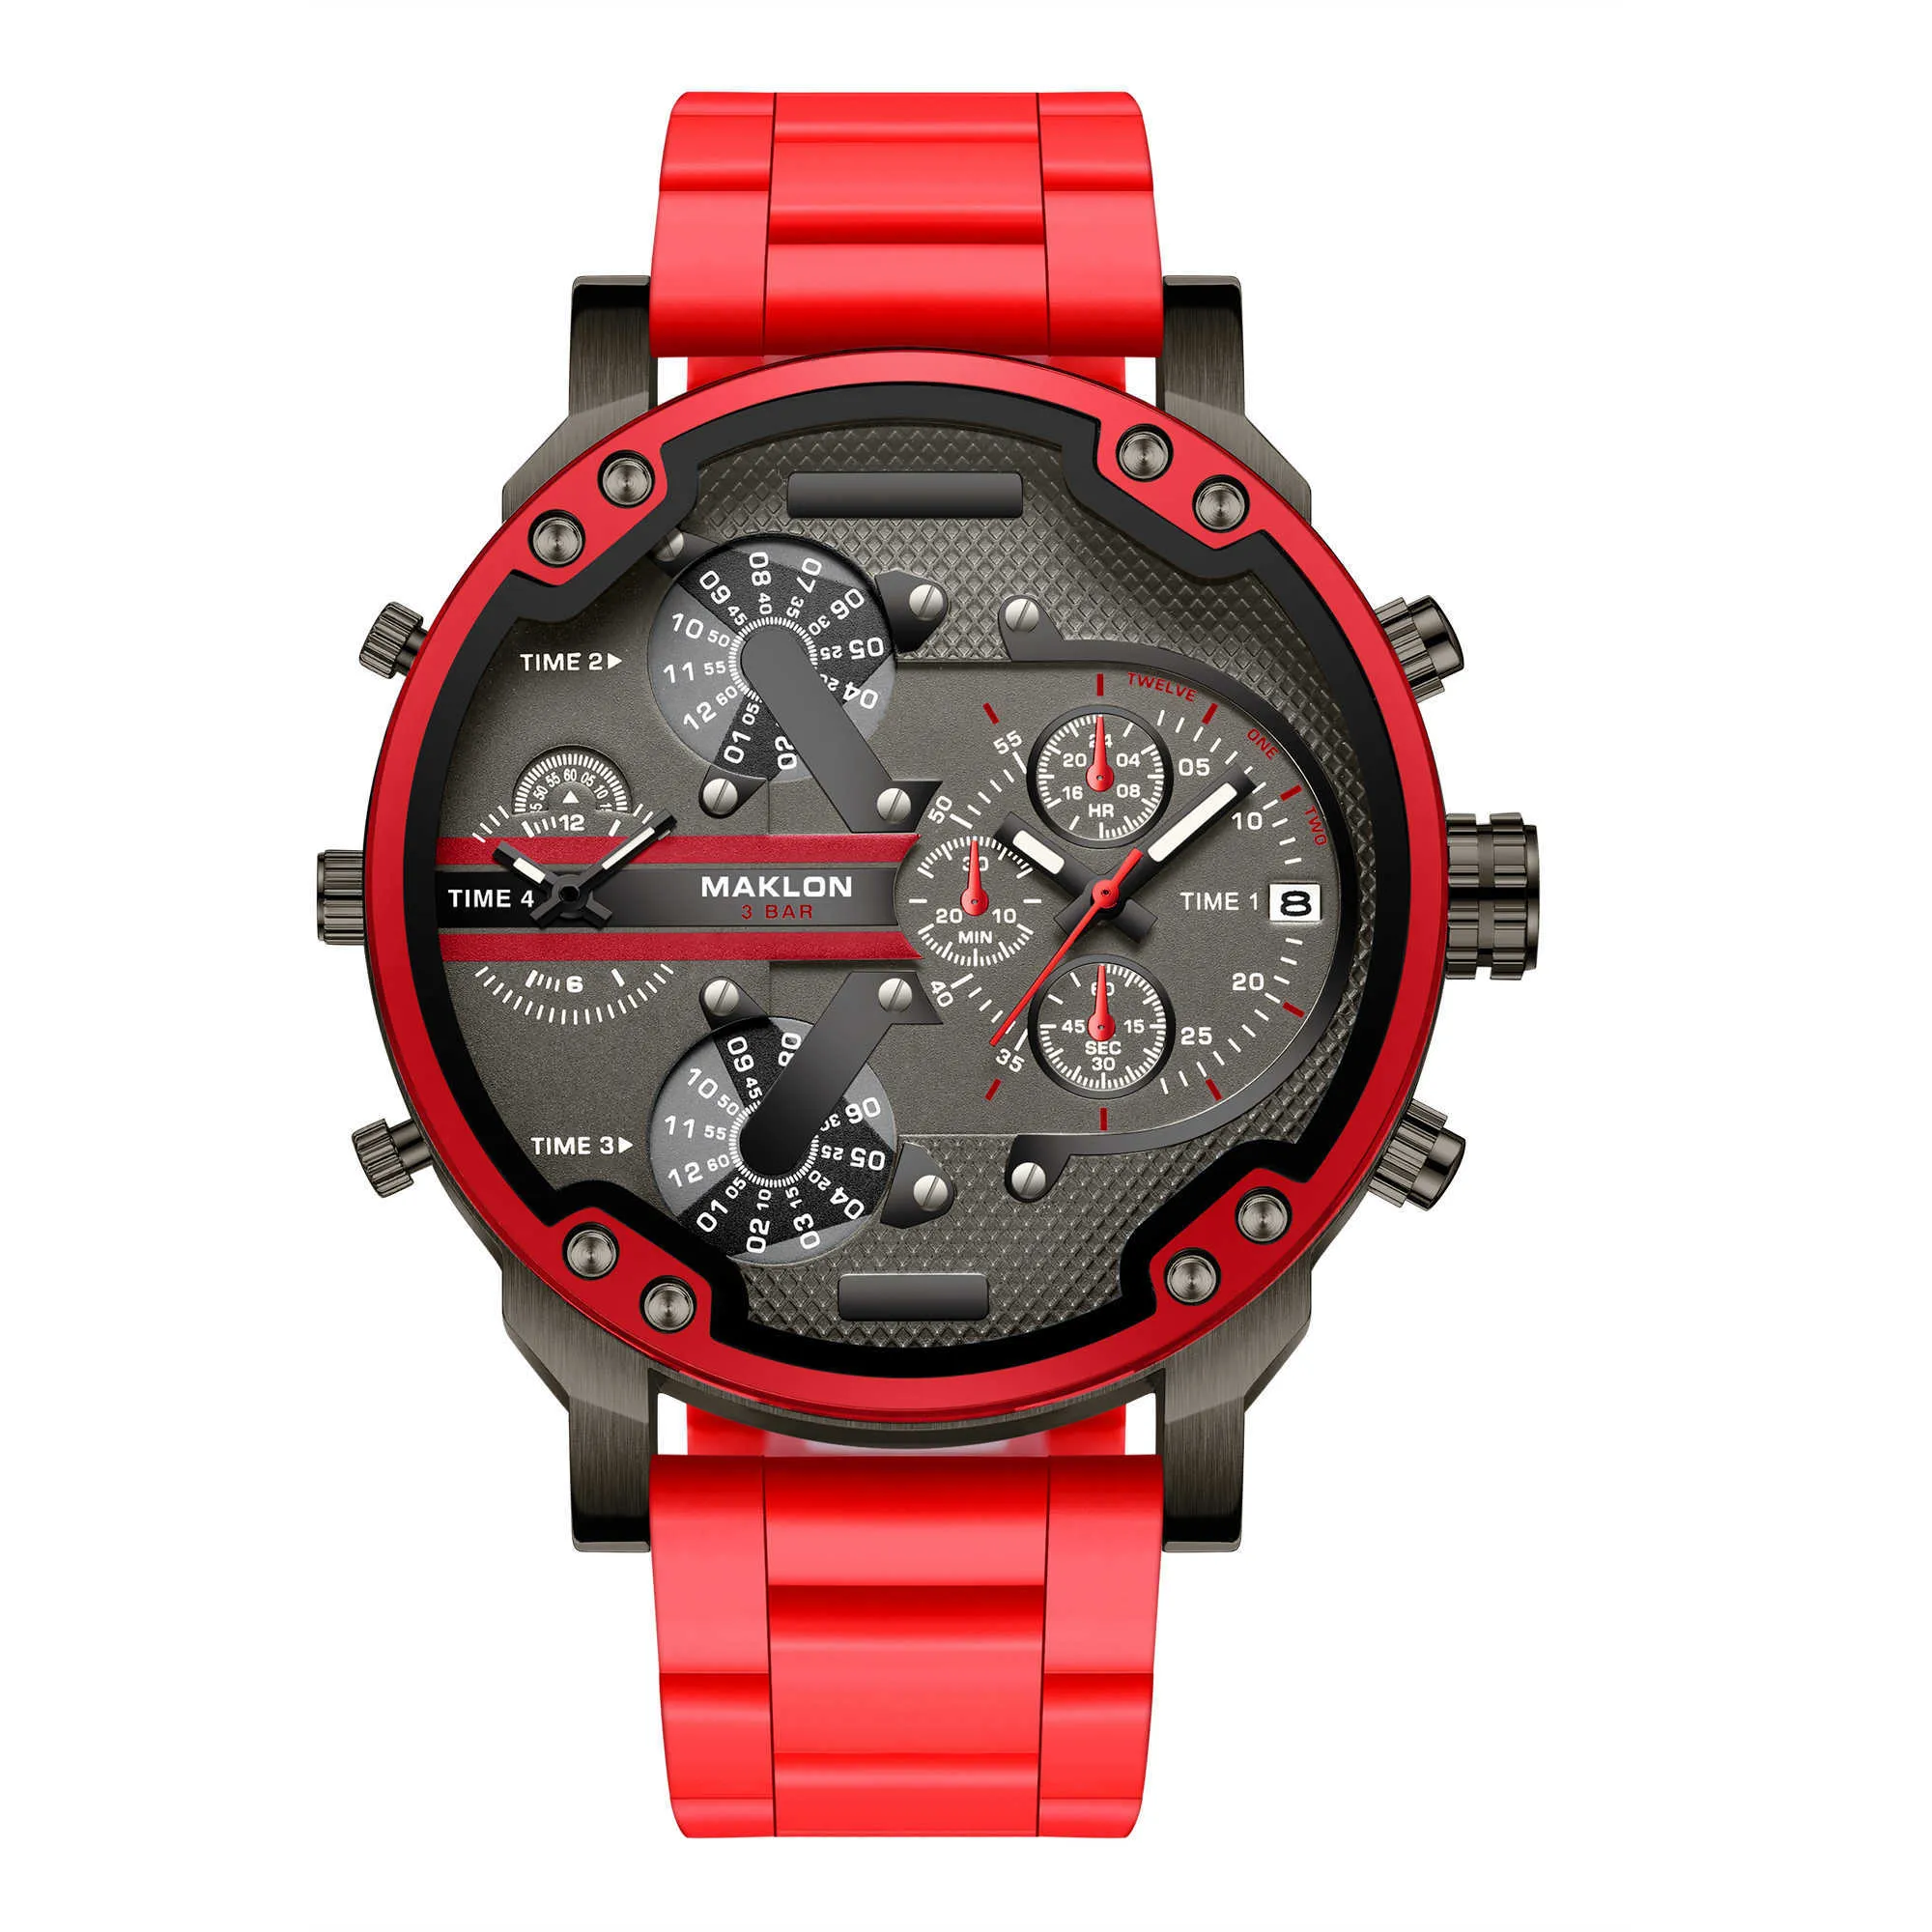 Dz7 2019 vendite calde orologio maschile top brand dz moda di lusso al quarzo orologi sport militare orologio da polso drop shipping X0625